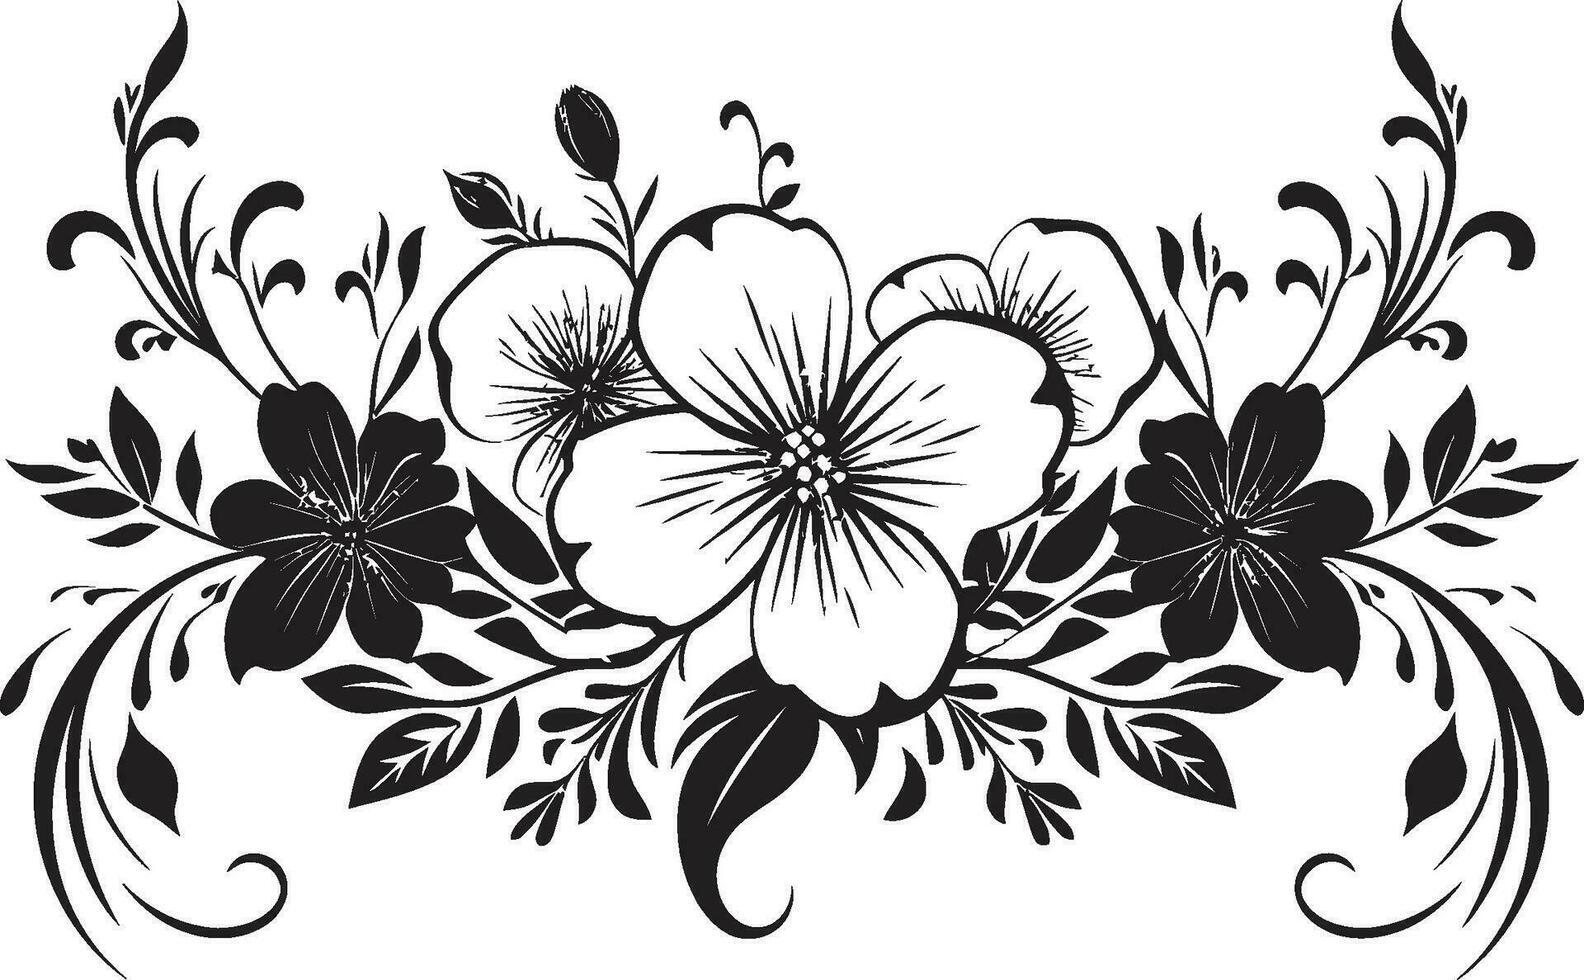 delicado hecho a mano follaje icónico logo detalle retro floral Desplazarse mano dibujado vector emblema